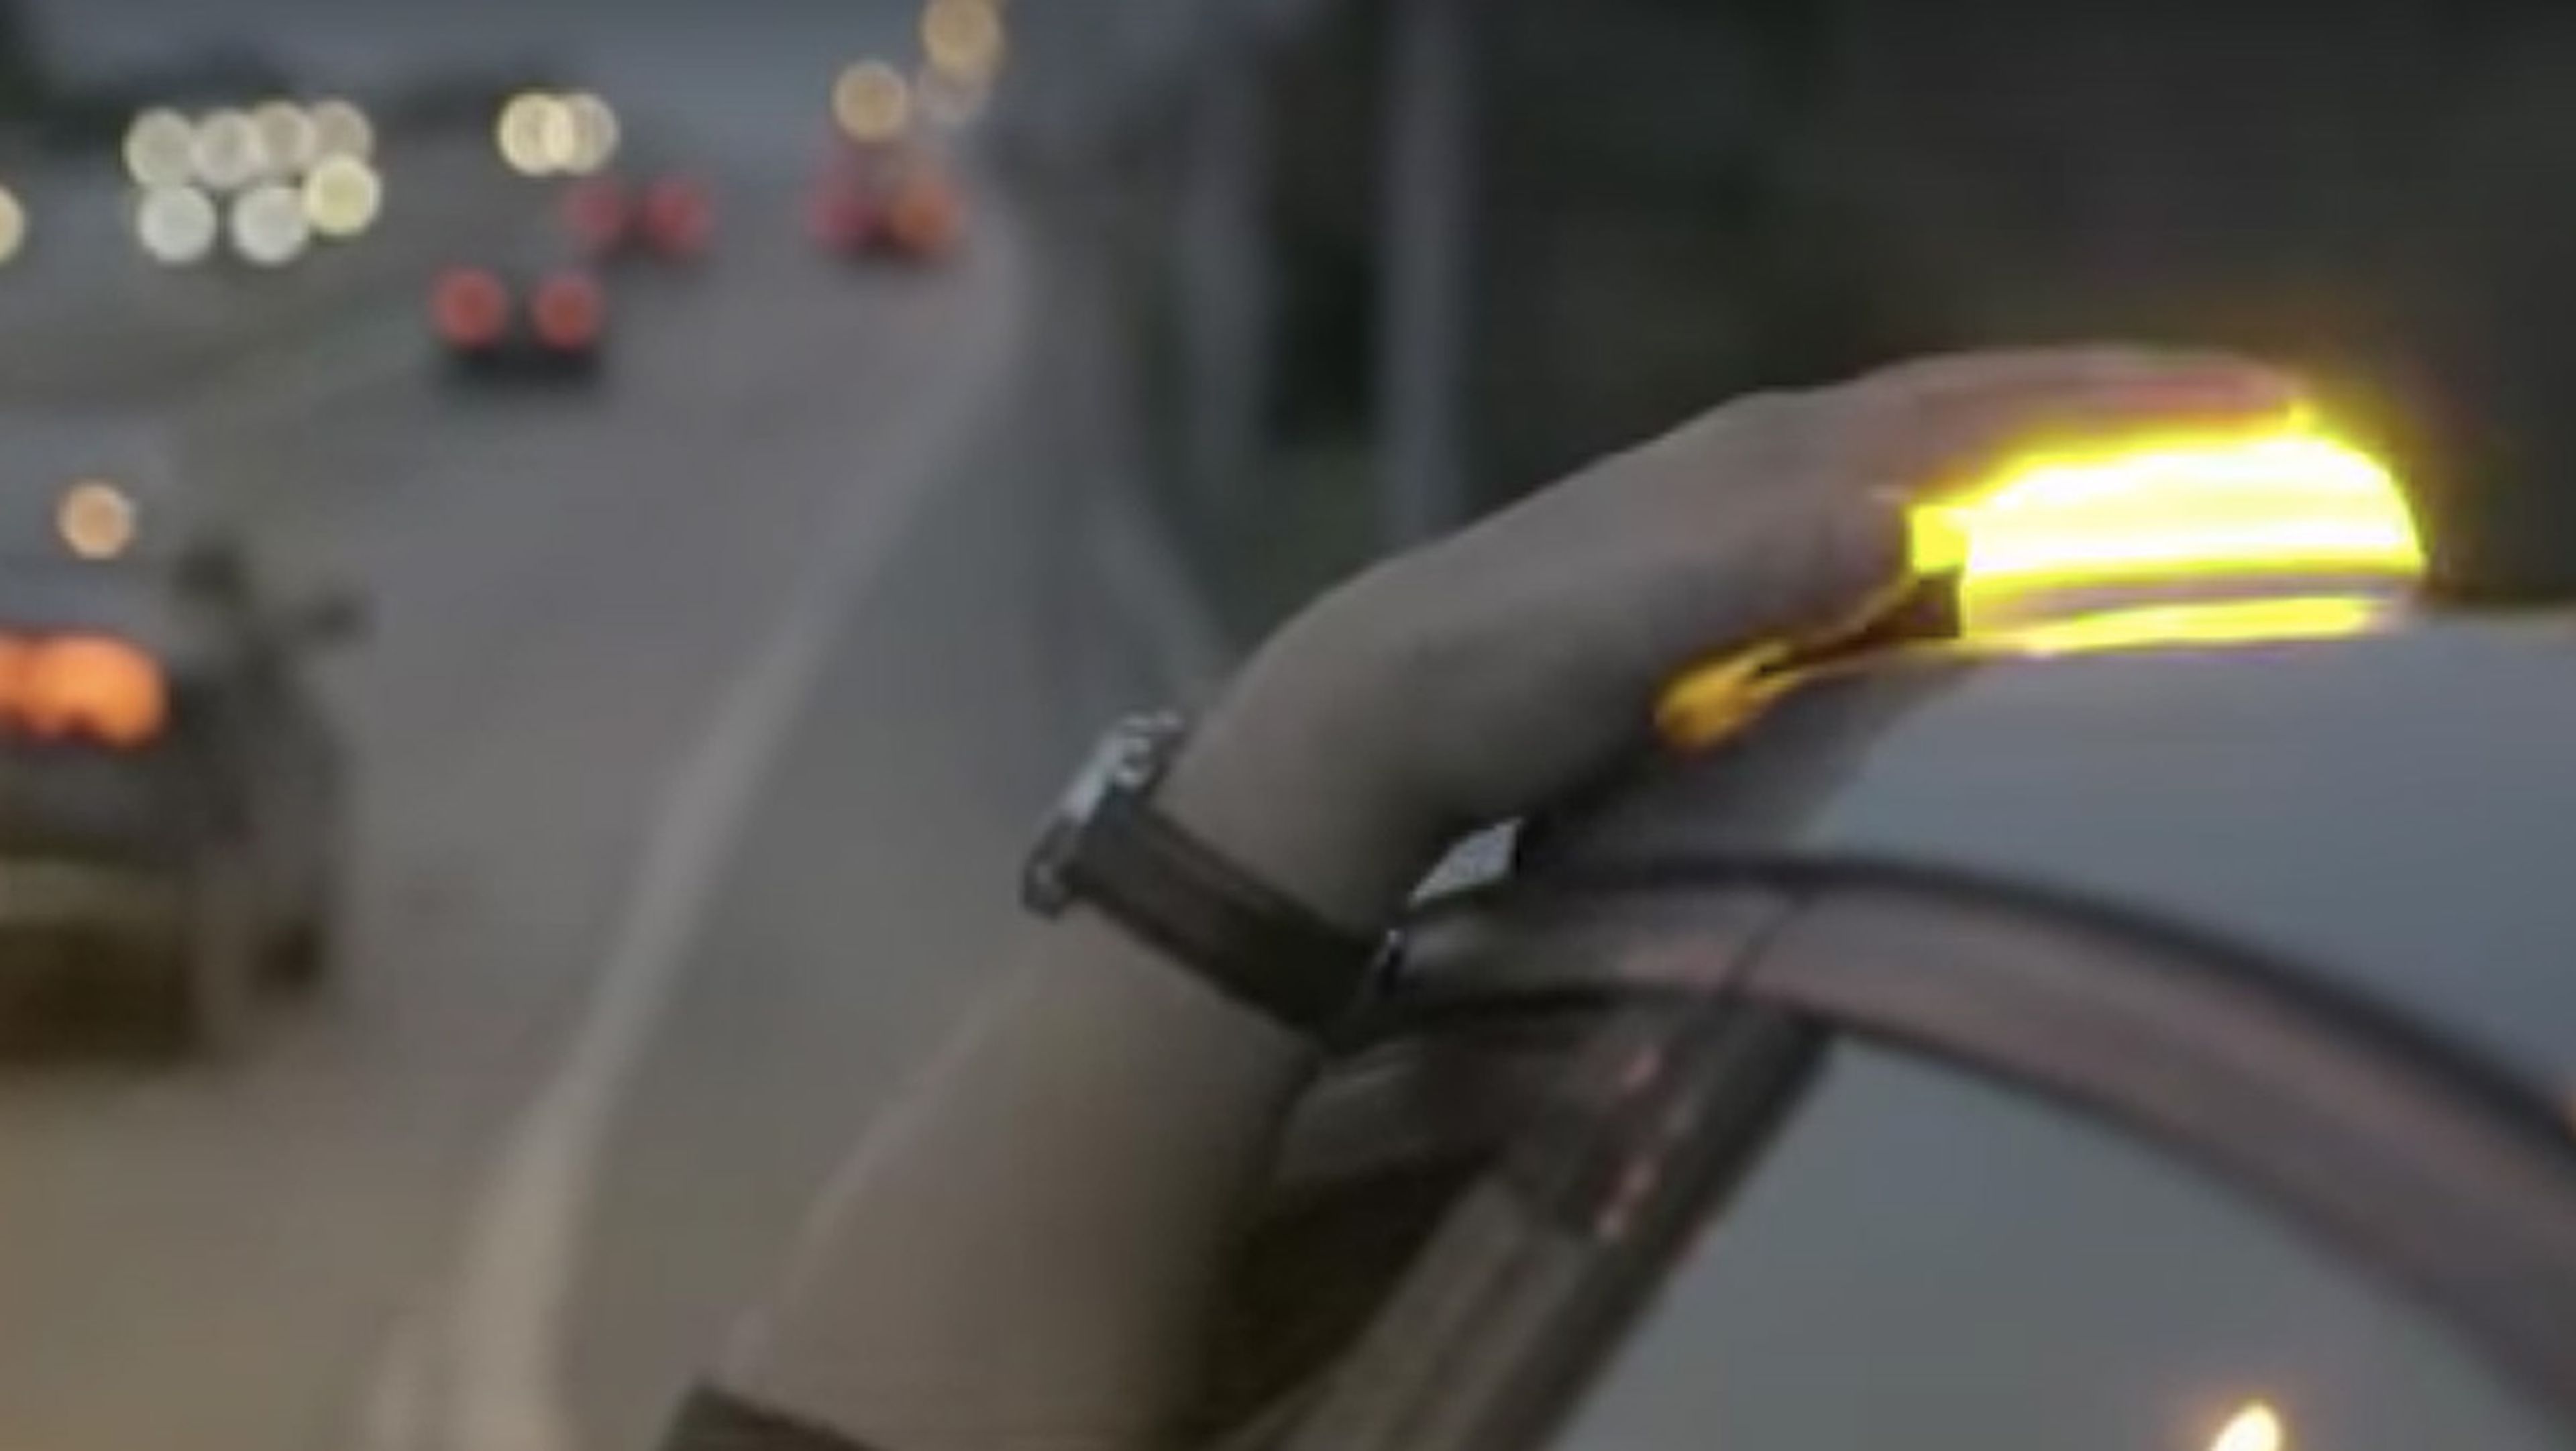 Balizas luminosas para señalizar emergencias en el coche